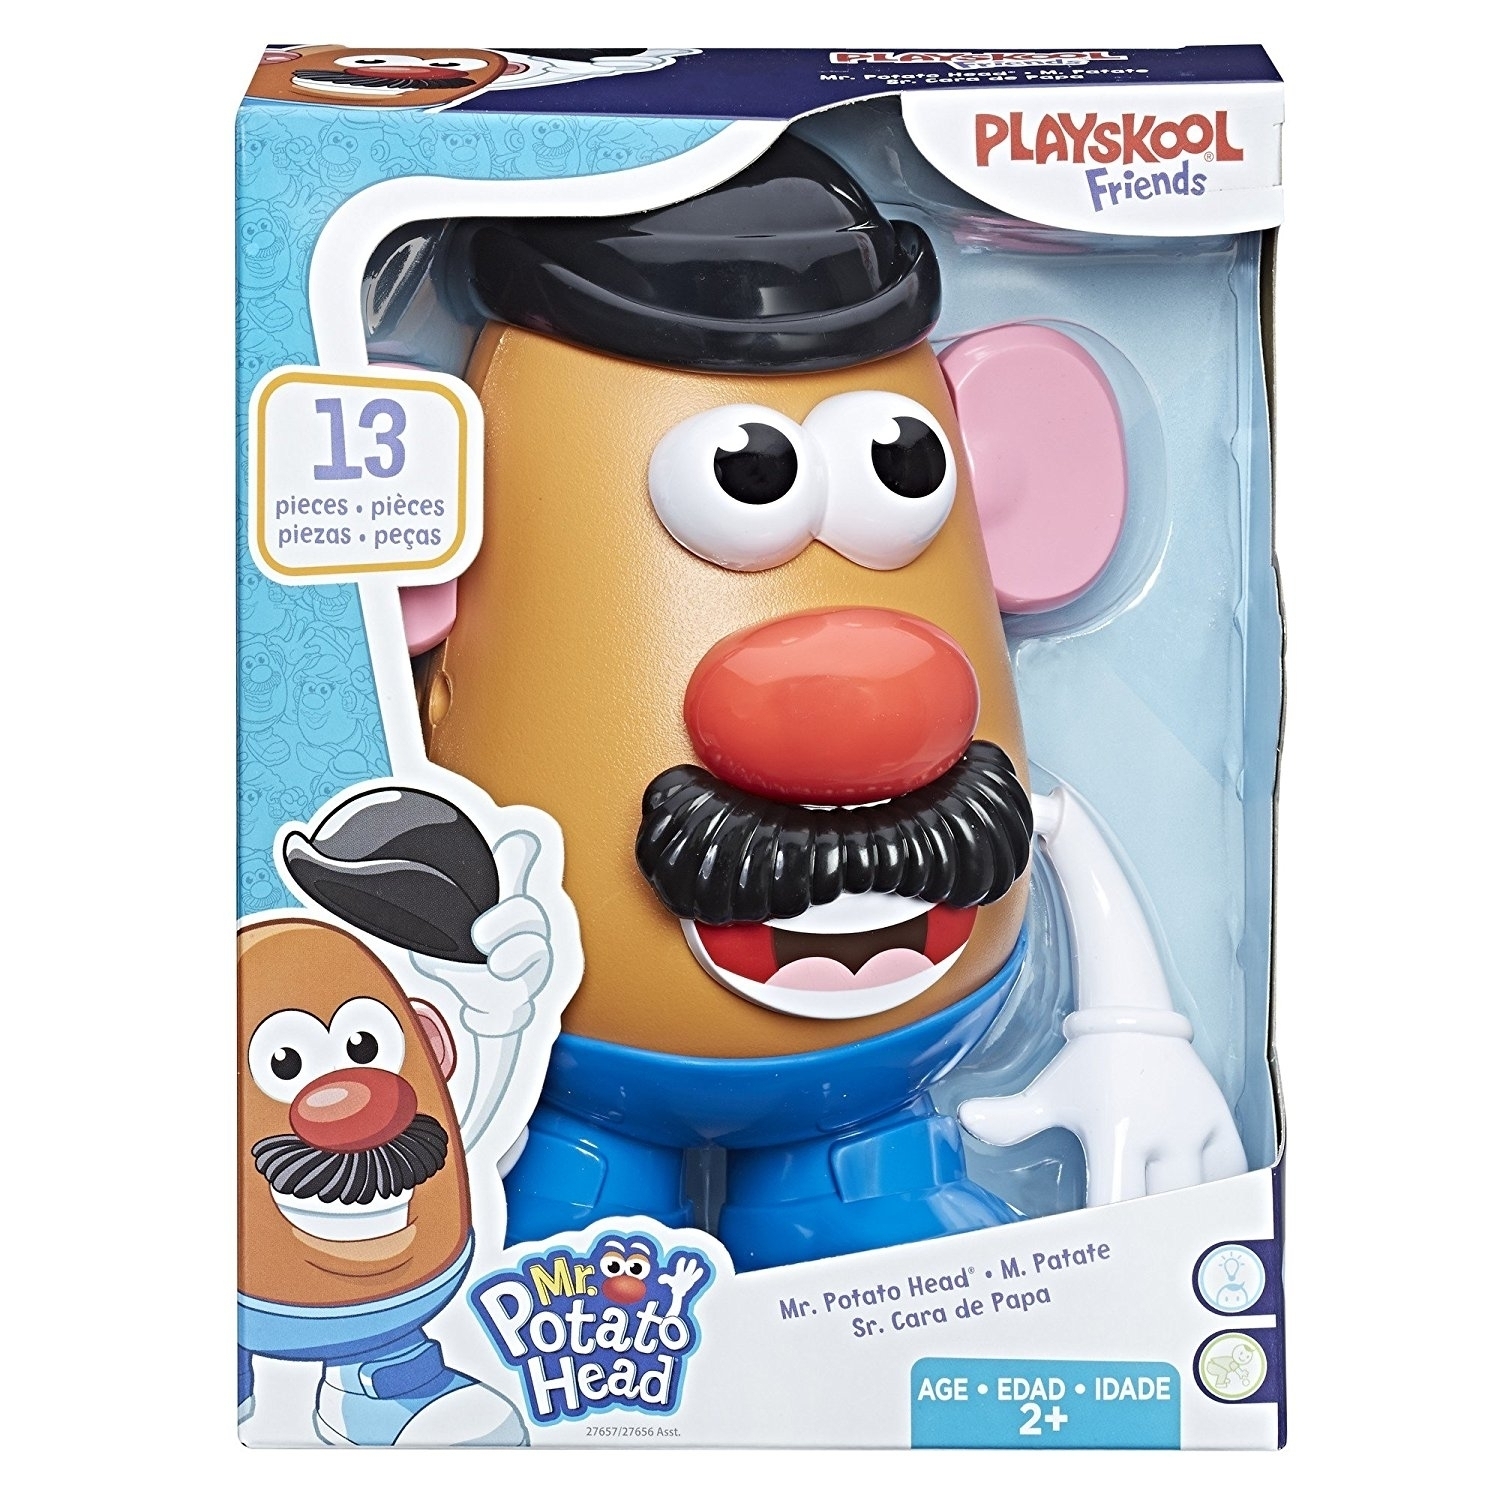 Mr. Potato Head Toys kwa mauzo kwenye Newcastle upon Tyne